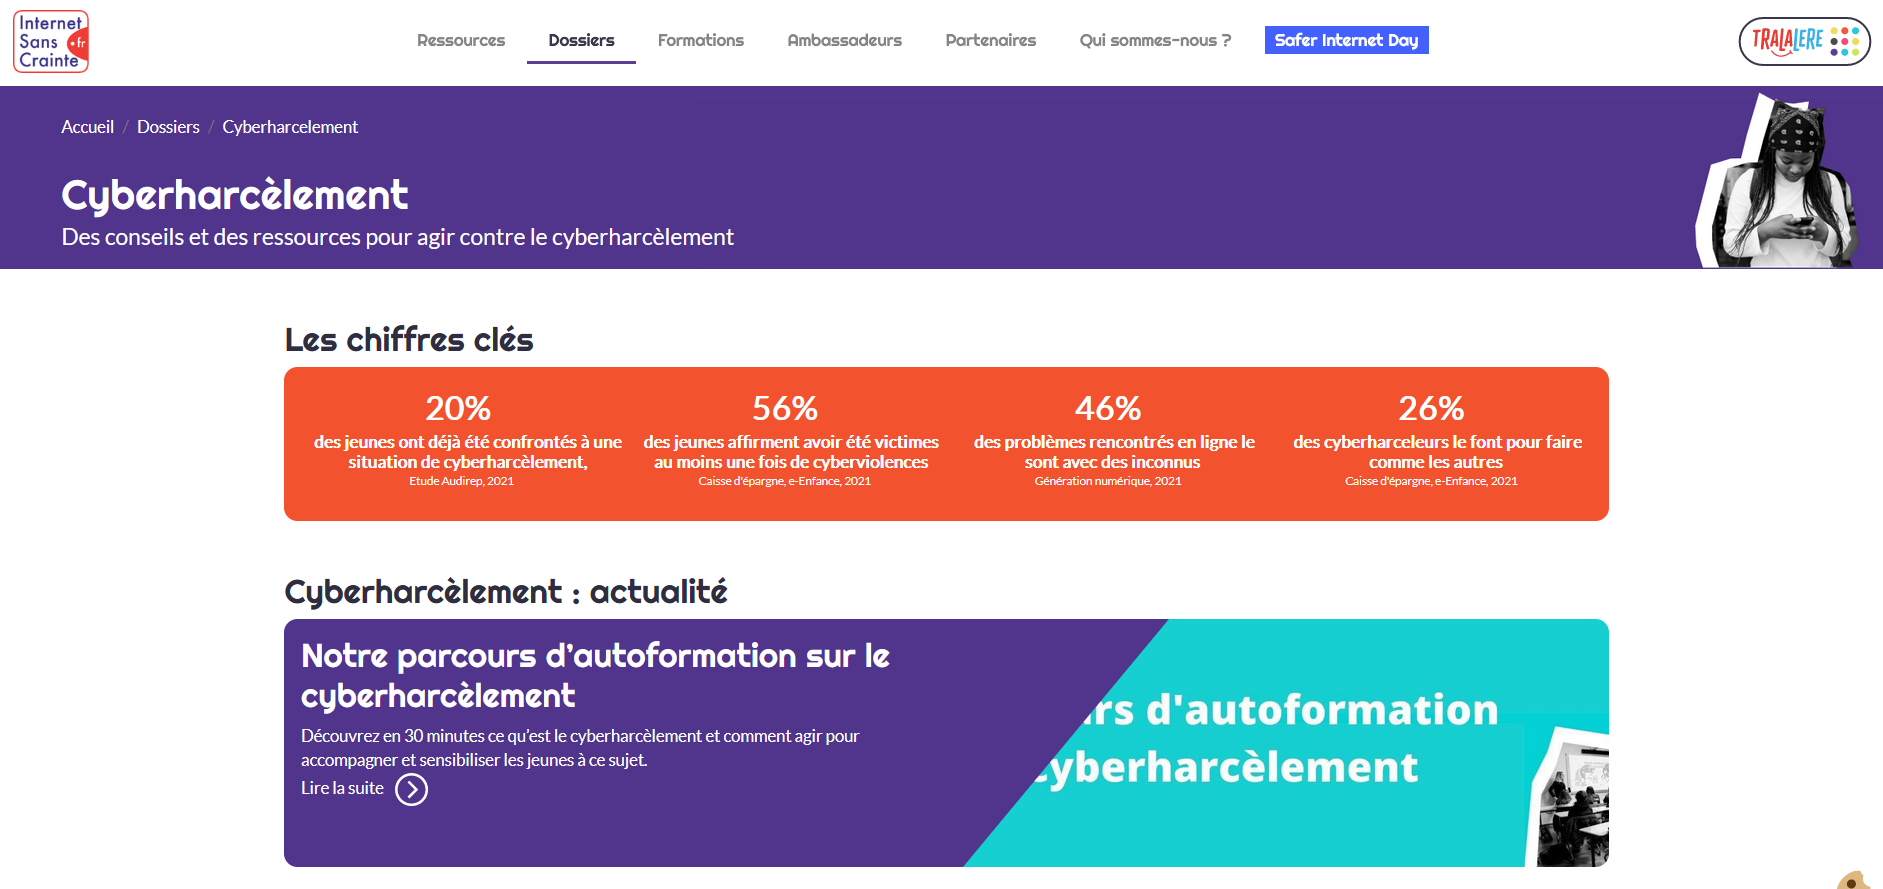 Site www.internetsanscrainte.fr - Cyberharcèlement